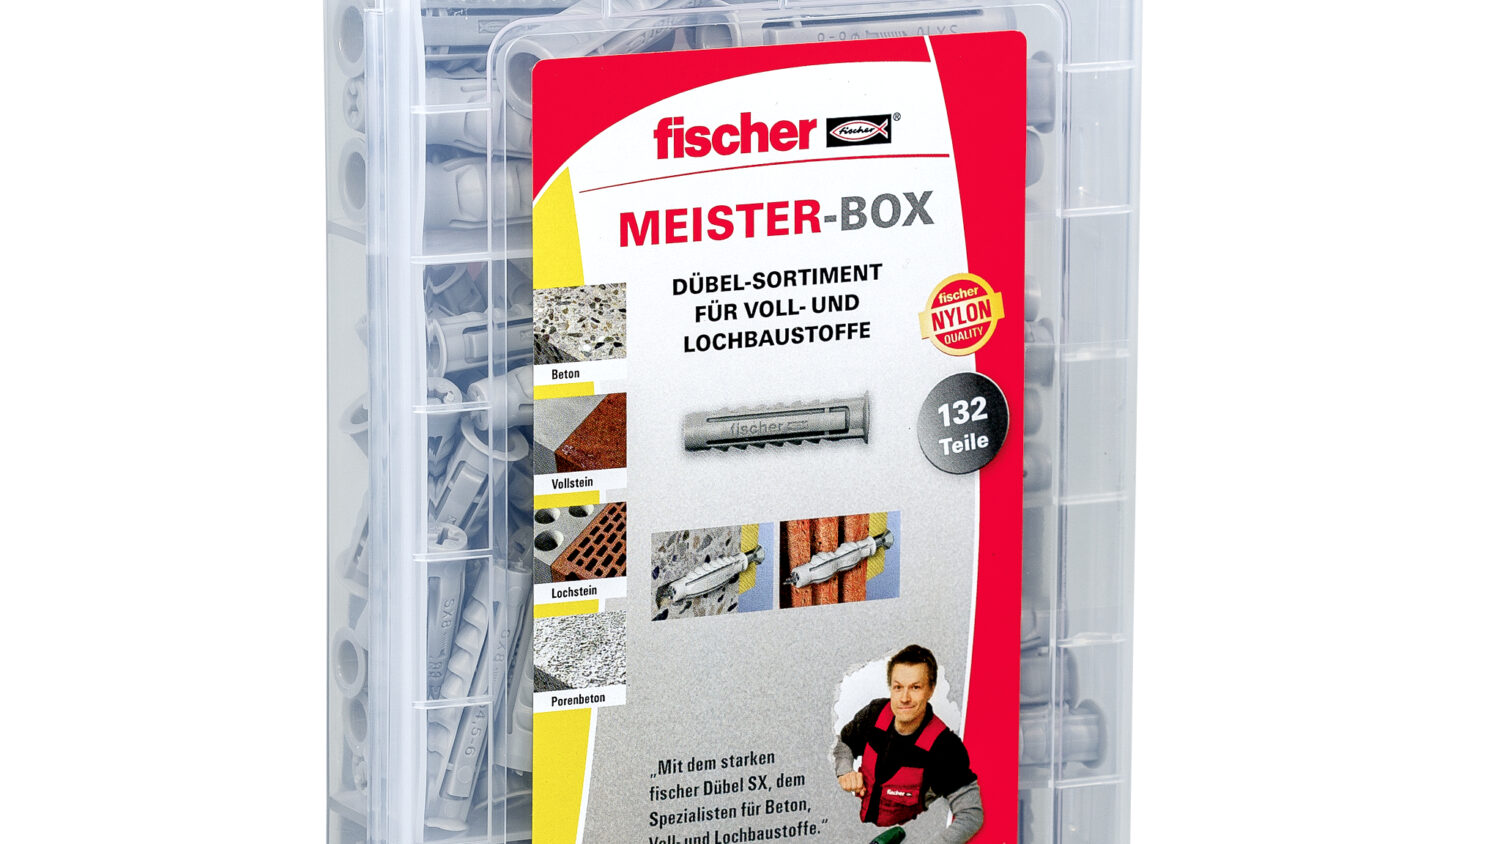 Die fischer Meister-Box SX-Dübel enthält vorsortiert 60 Spreizdübel SX 6 x 30, 60 Spreizdübel SX 8 x 40 und 12 Spreizdübel SX10 x 50...